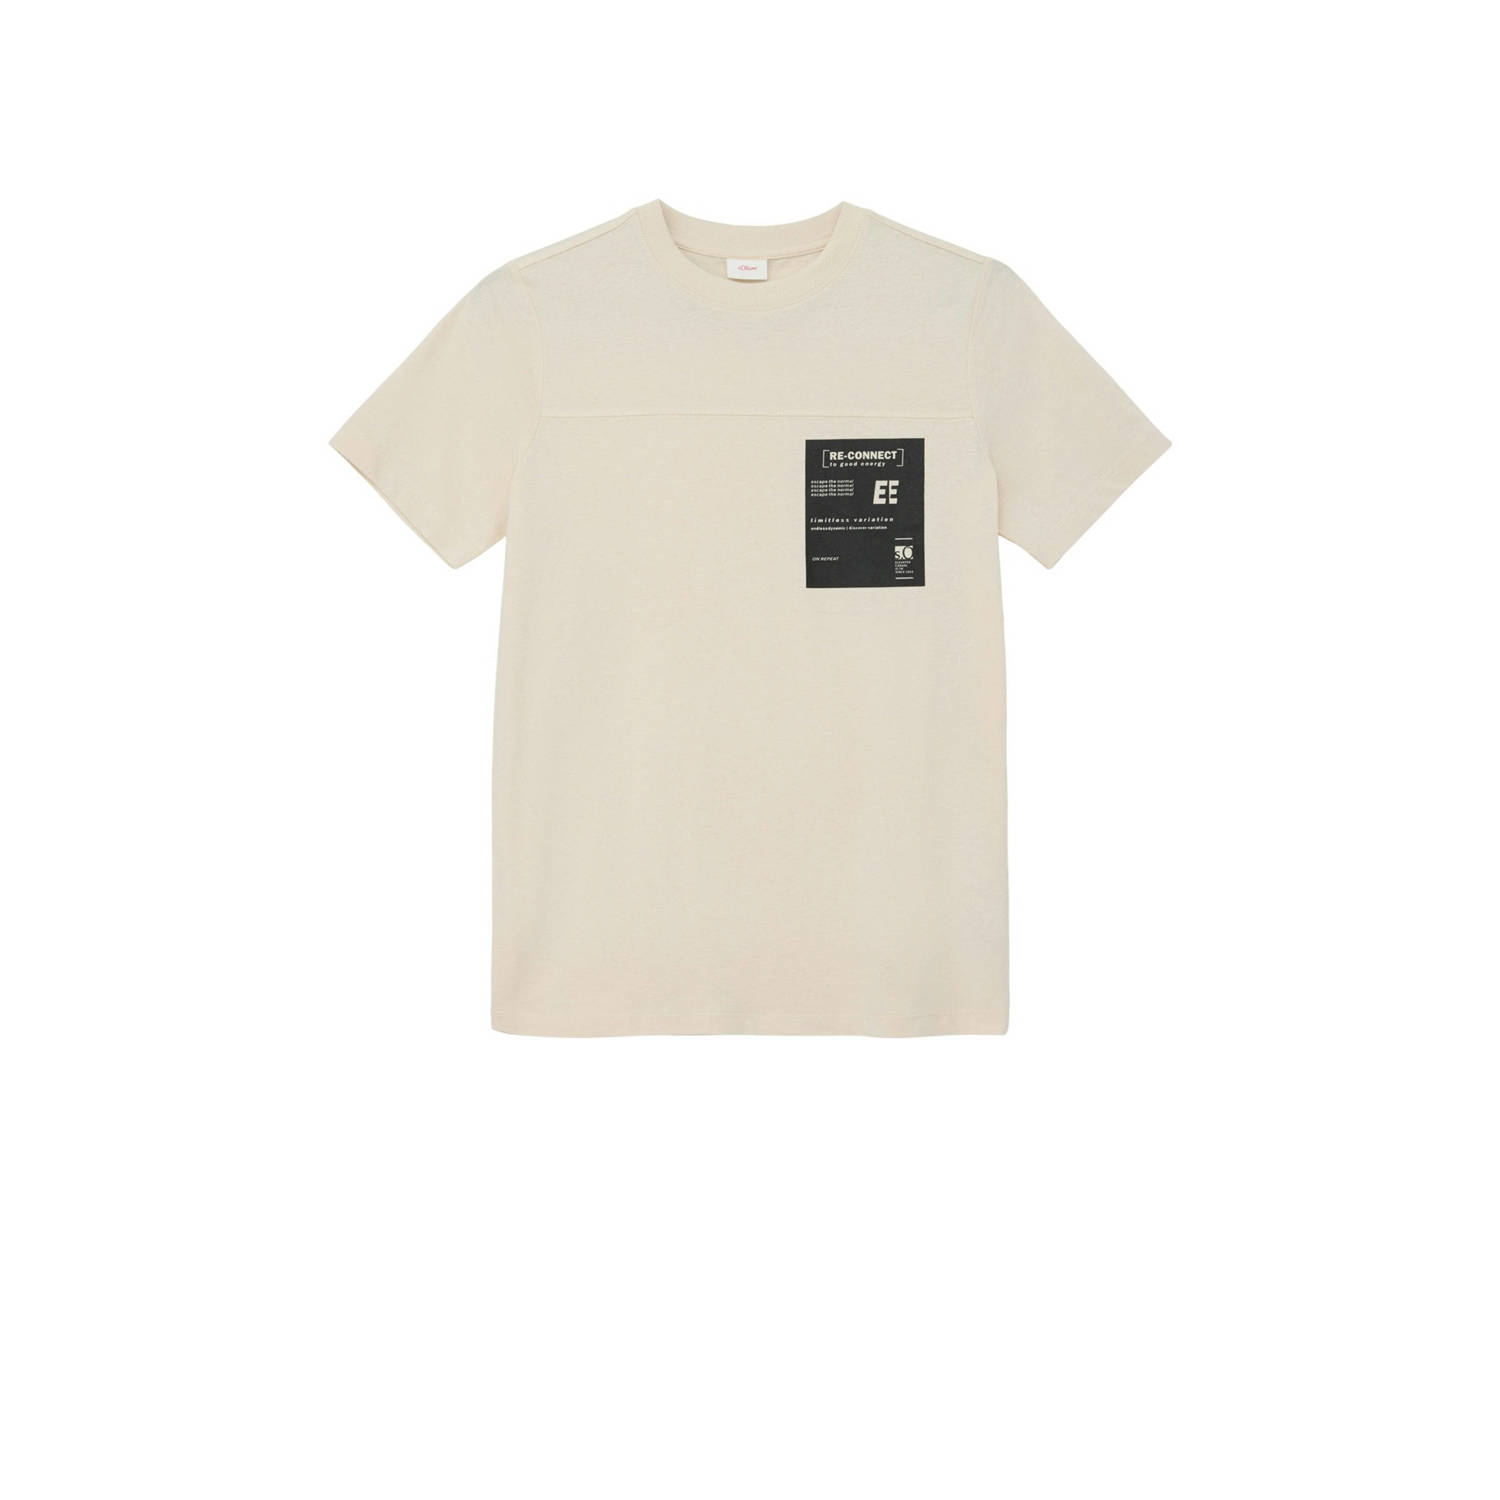 s.Oliver T-shirt beige